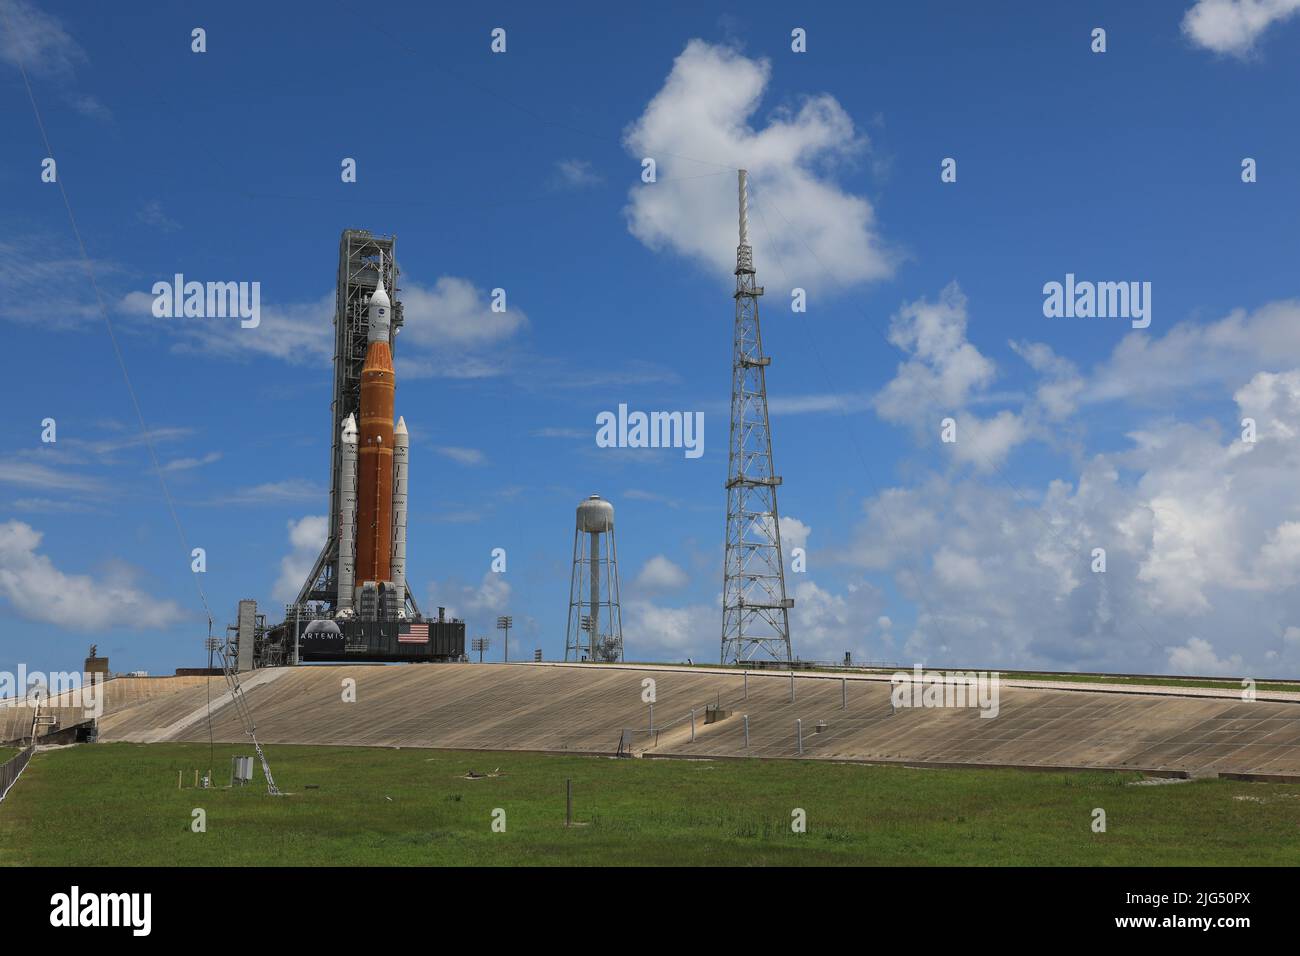 El cohete del Sistema de Lanzamiento Espacial Artemis I de la NASA con la nave espacial Orion a bordo se despliega sobre un lanzador móvil en el Complejo de Lanzamiento 39B, en el Centro Espacial Kennedy, el 30 de junio de 2022, en Cabo Cañaveral, Florida. El SLS y Orion fueron transportados a la plataforma en Crawler-Transporter 2 para una prueba de prelanzamiento llamada ensayo de vestido mojado. Foto de stock